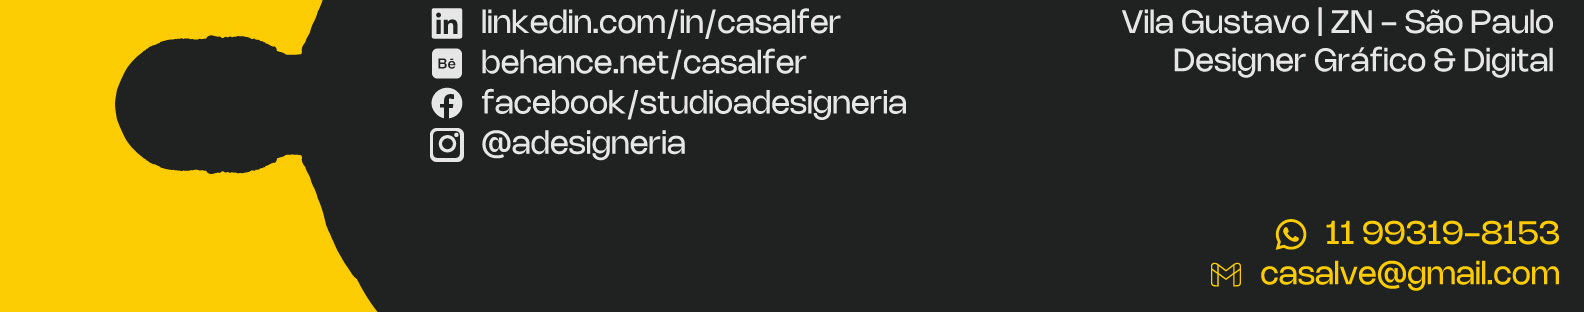 Cassiano Ferreira's profile banner